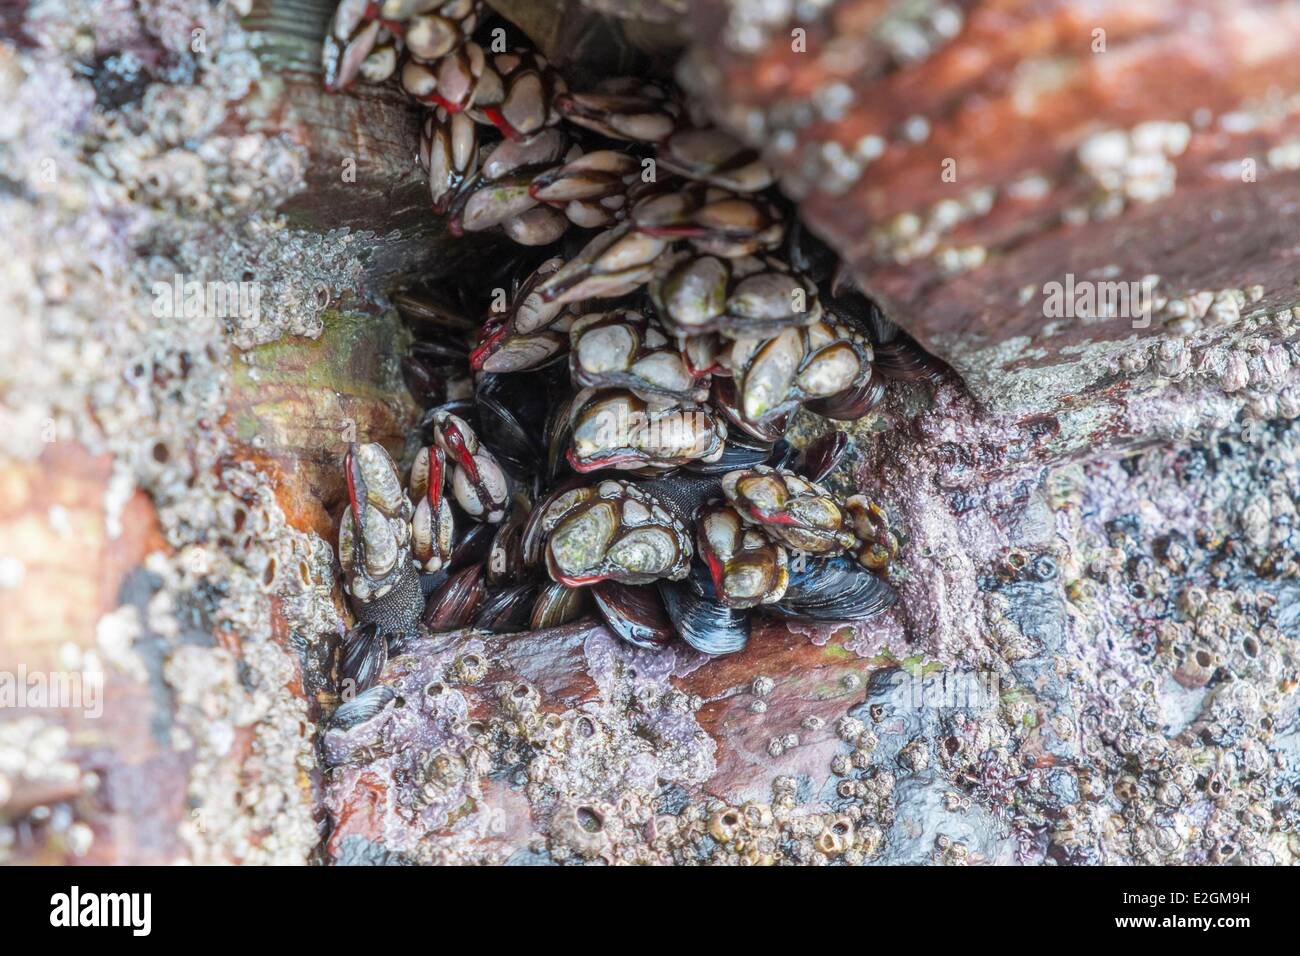 Spain Galicia goose neck barnacle (Pollicipes pollicipes) Stock Photo